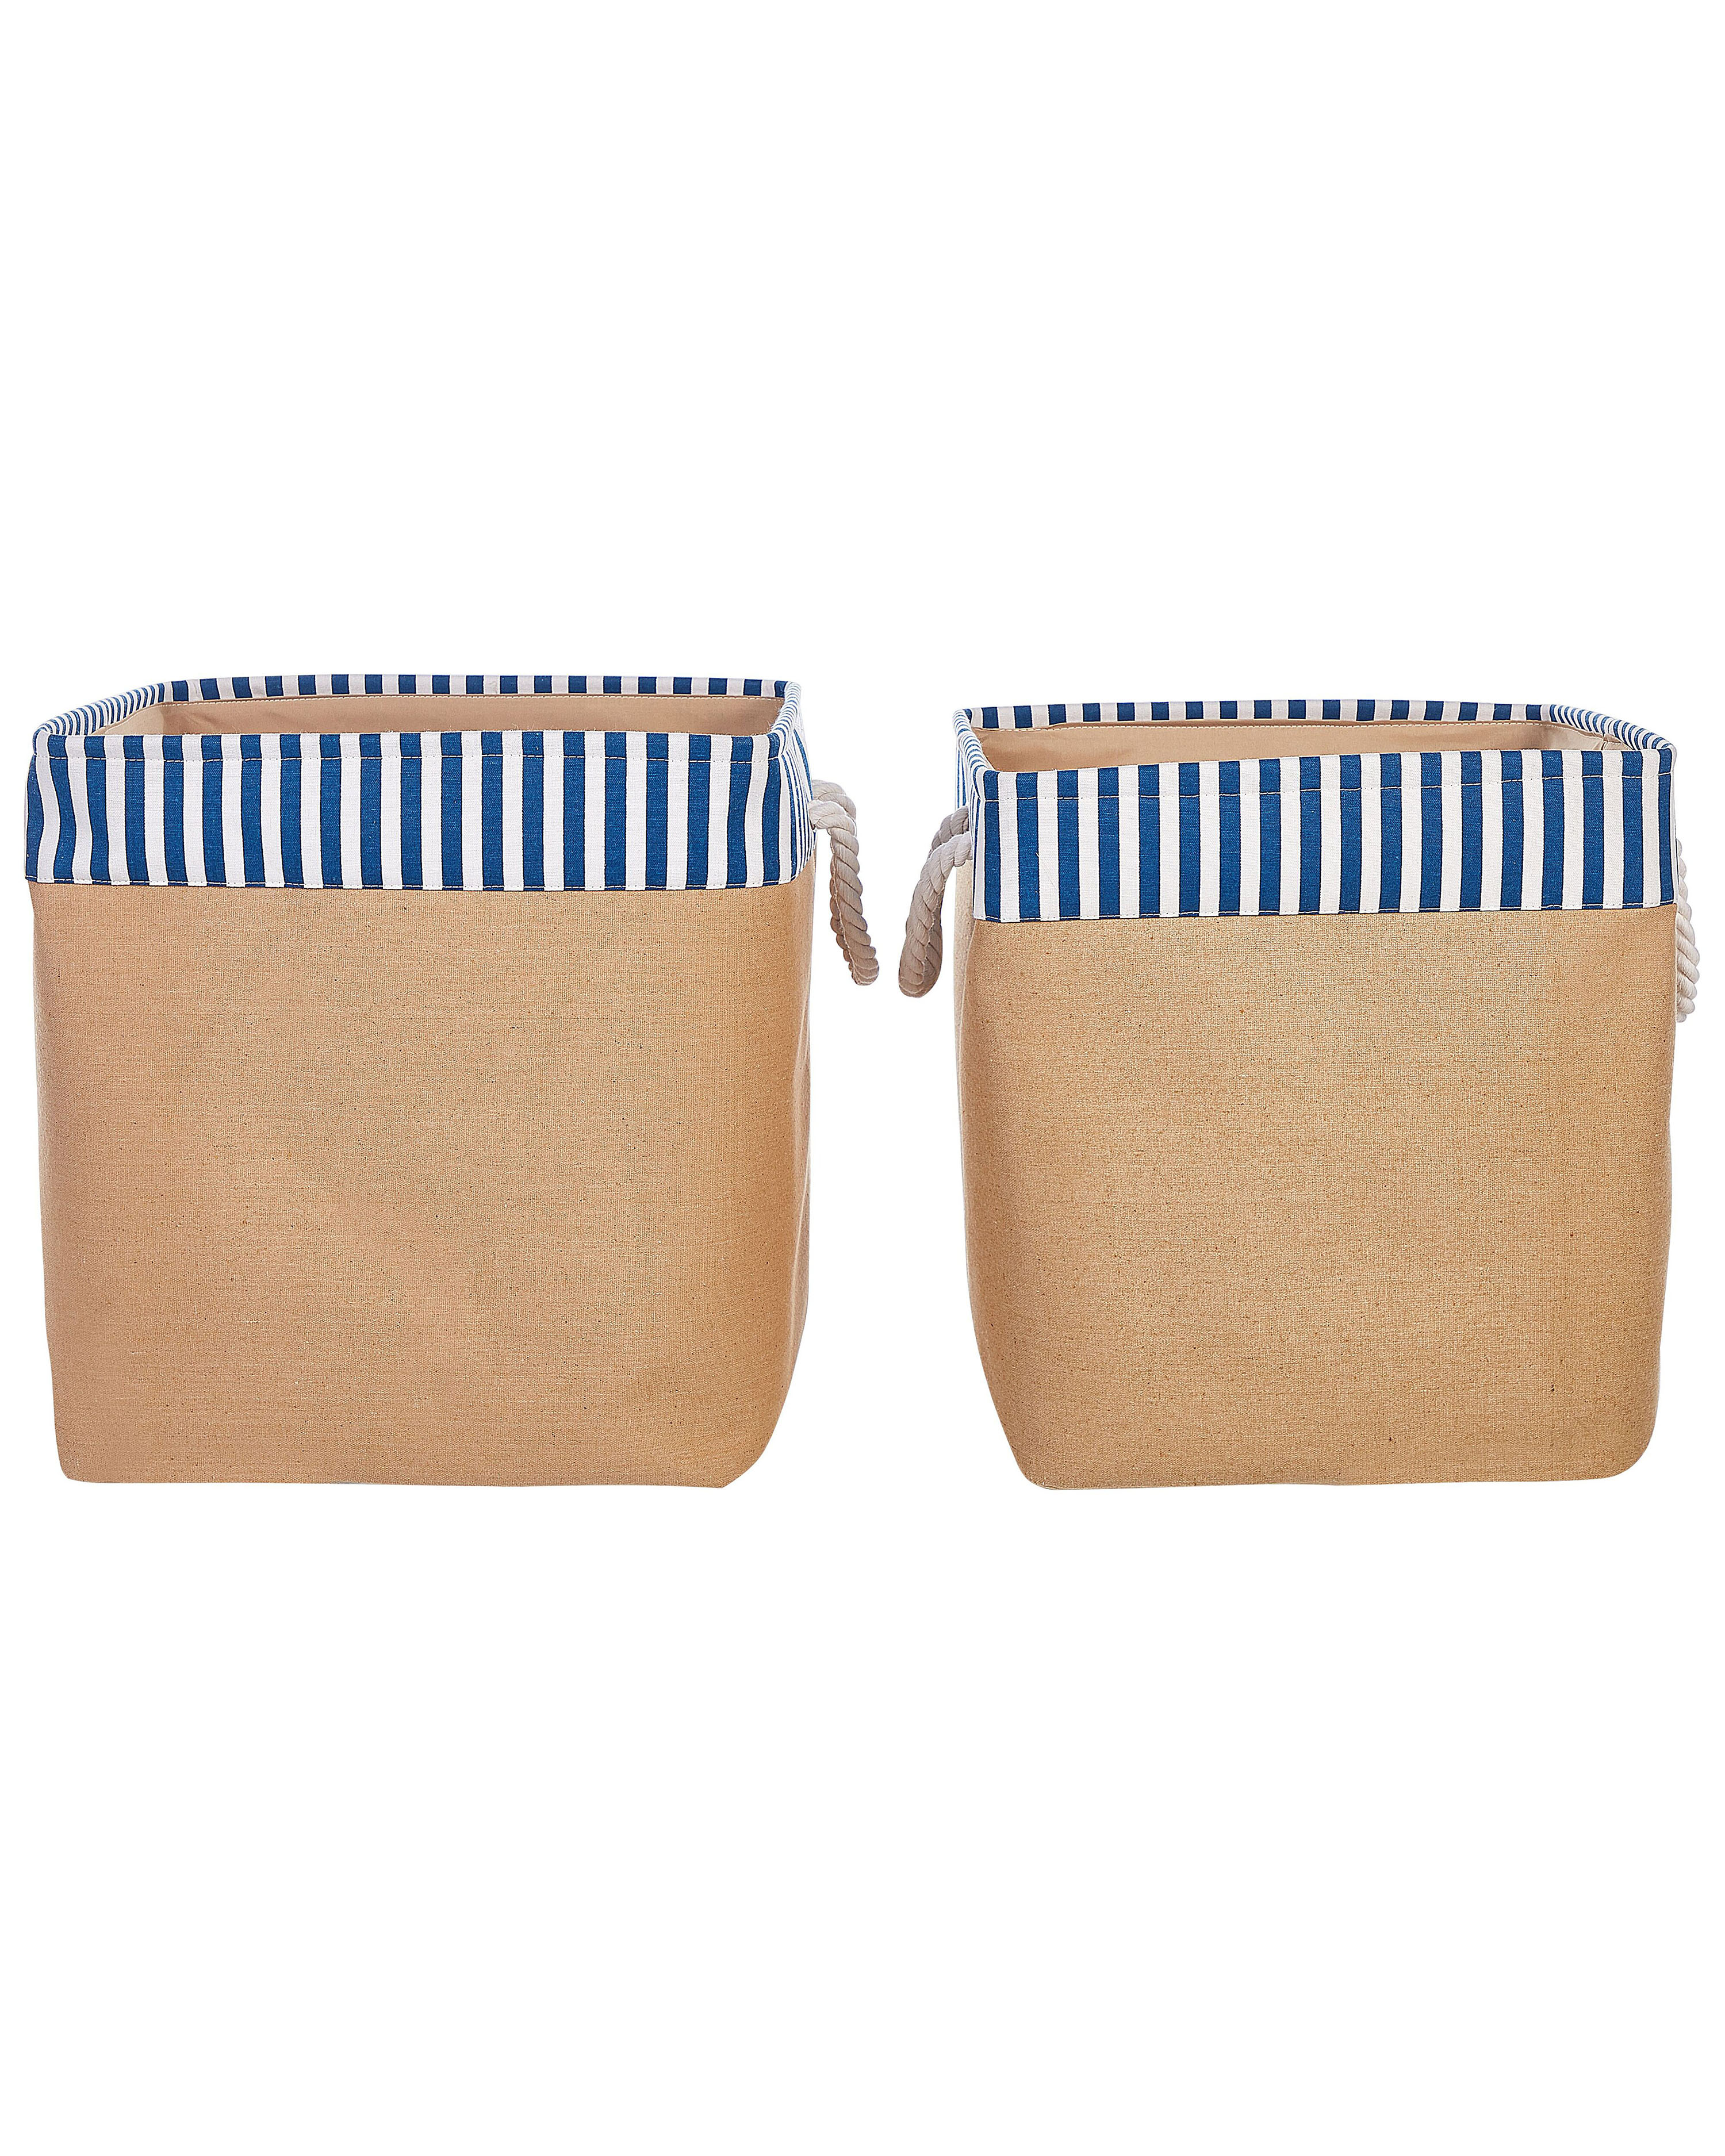 Conjunto de 2 cestas de poliéster beige/blanco/azul TUGUL